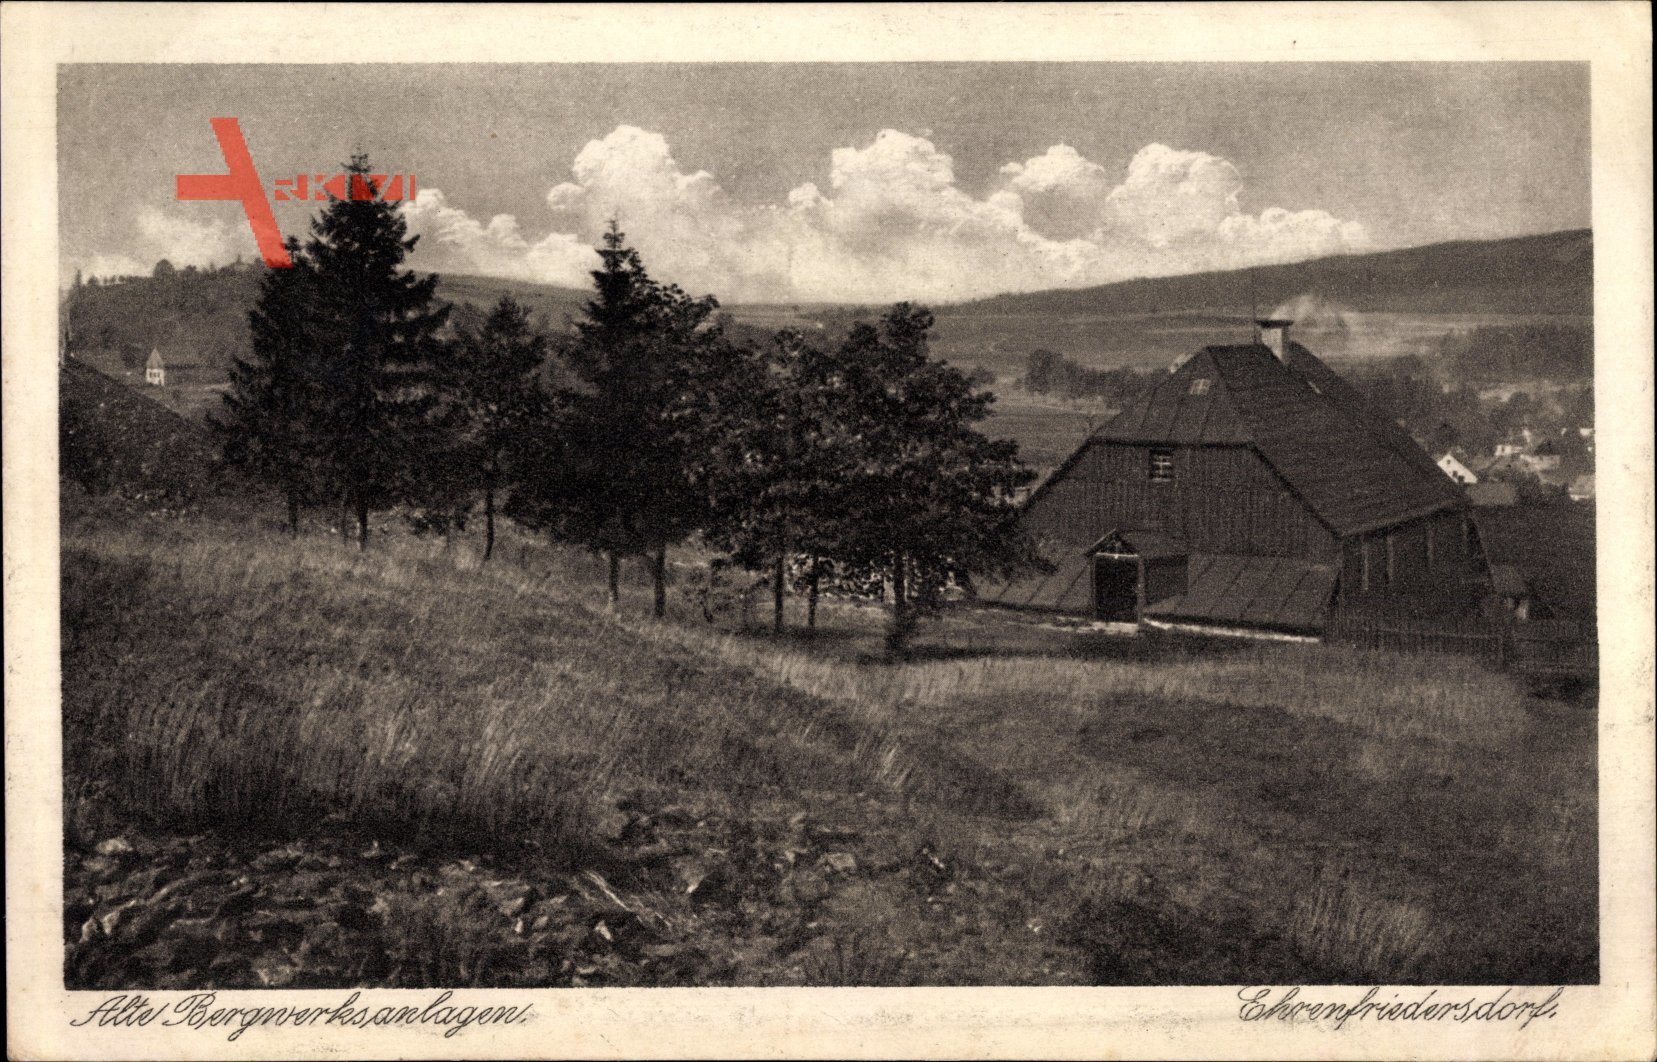 Ehrenfriedersdorf im Erzgebirge, Alte Bergwerksanlagen, Gebäude